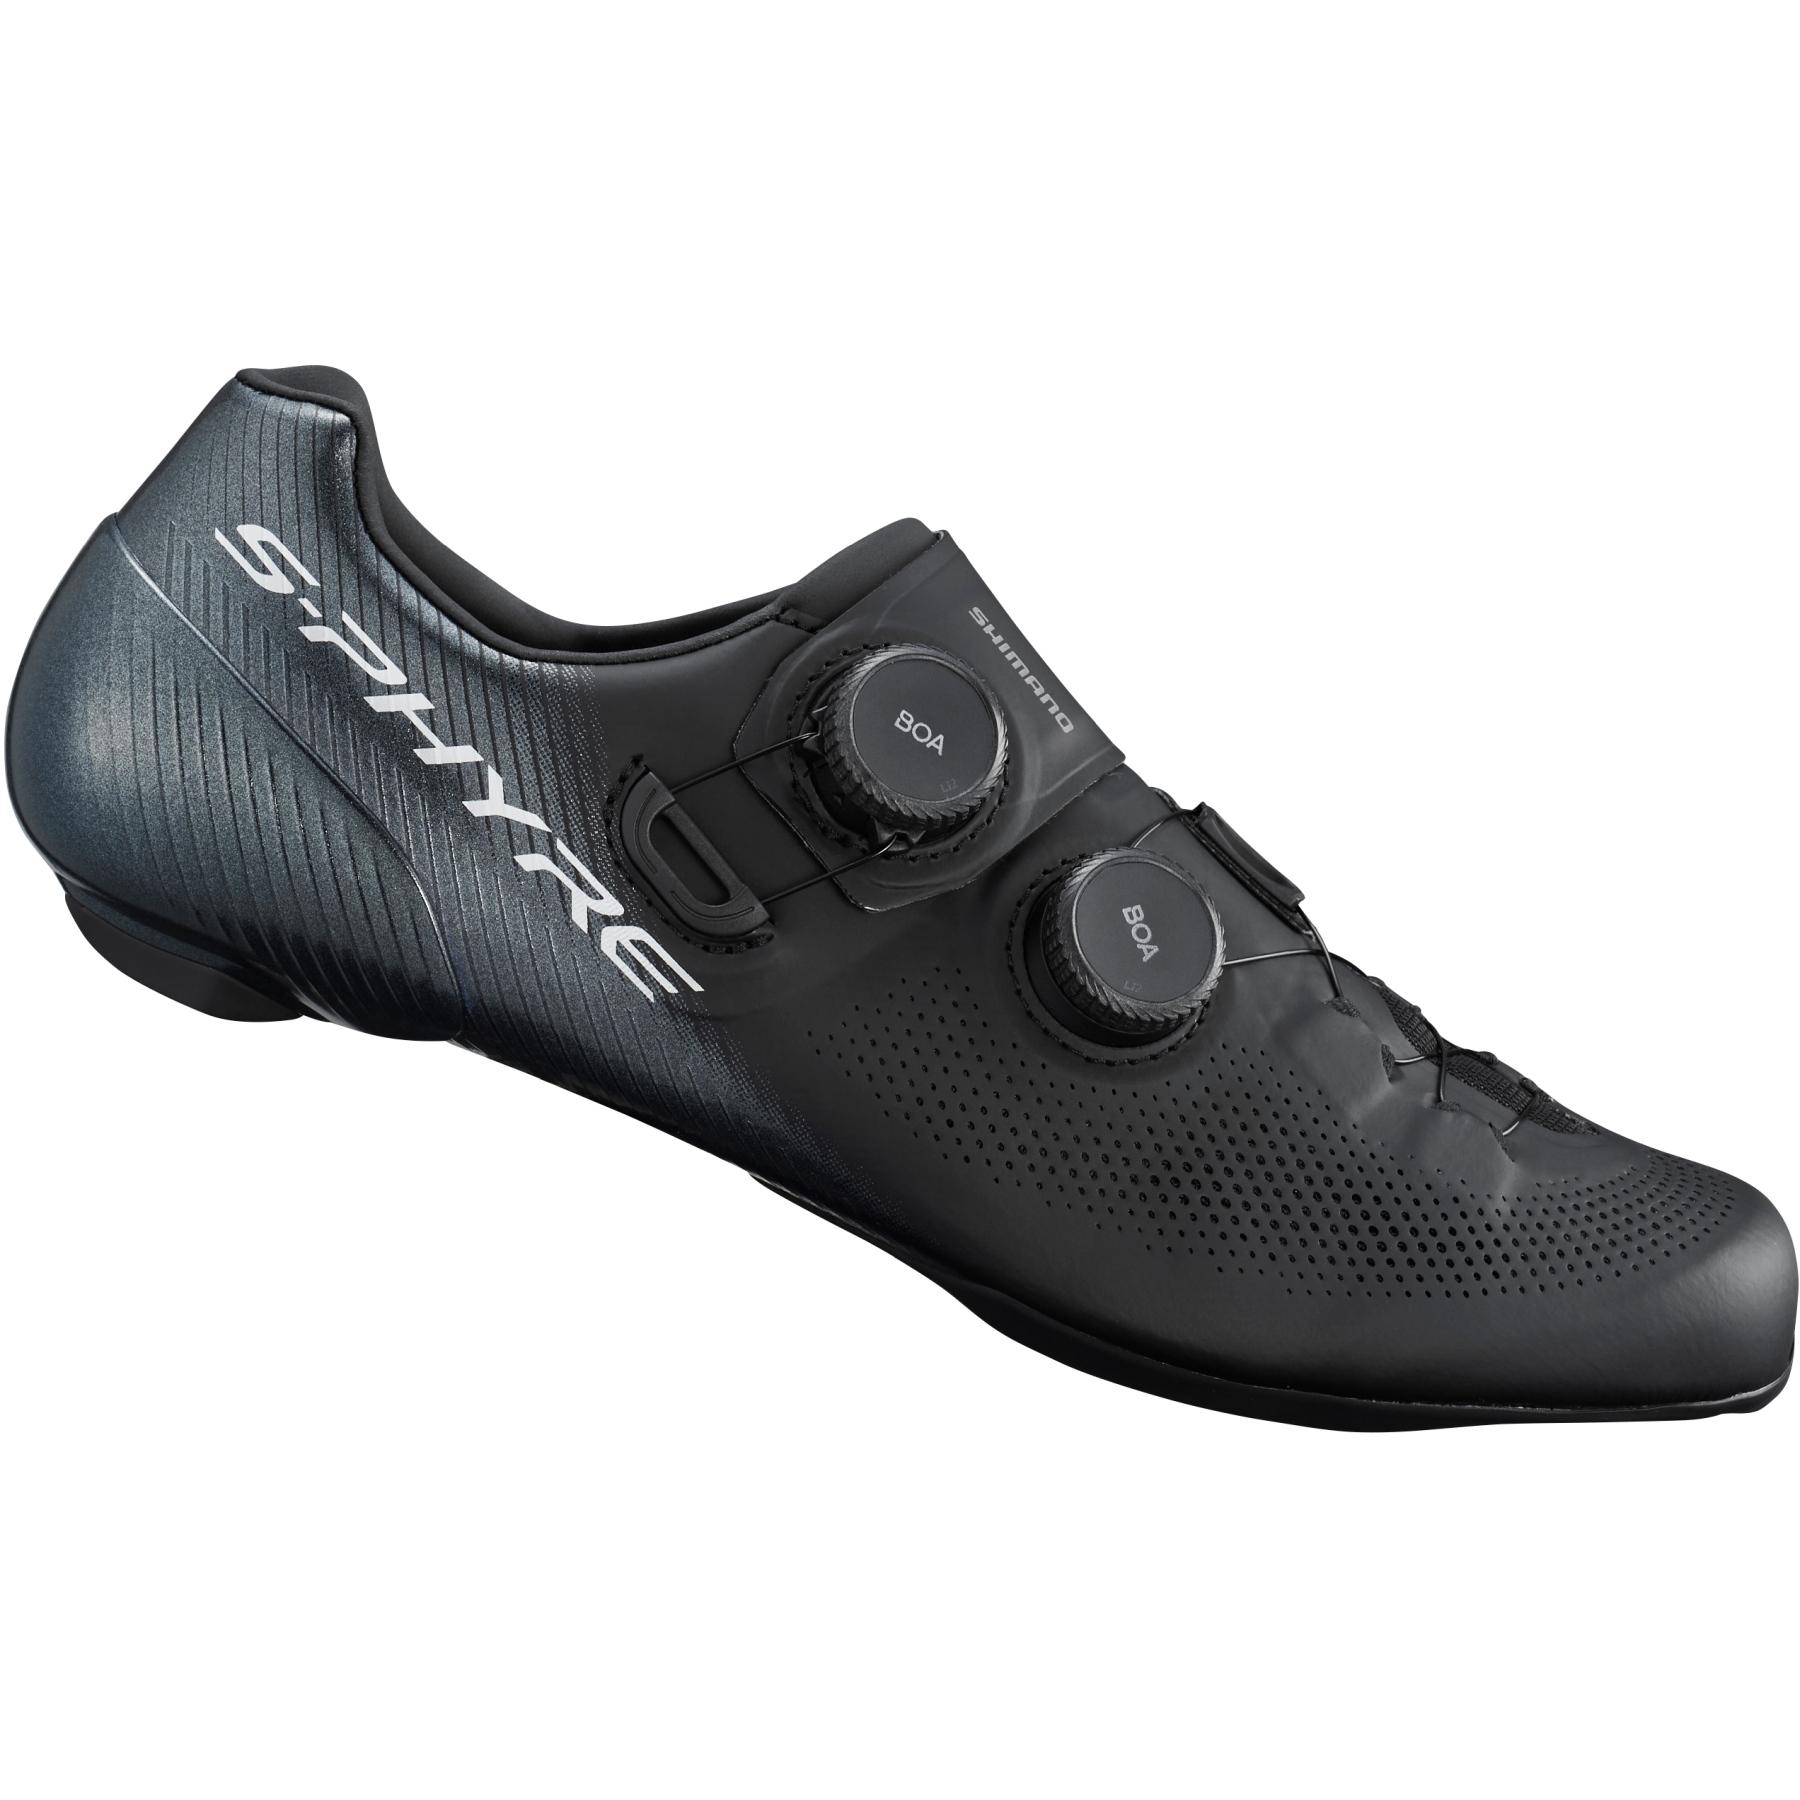 Produktbild von Shimano S-Phyre SH-RC903 Wide Rennrad Schuhe - schwarz